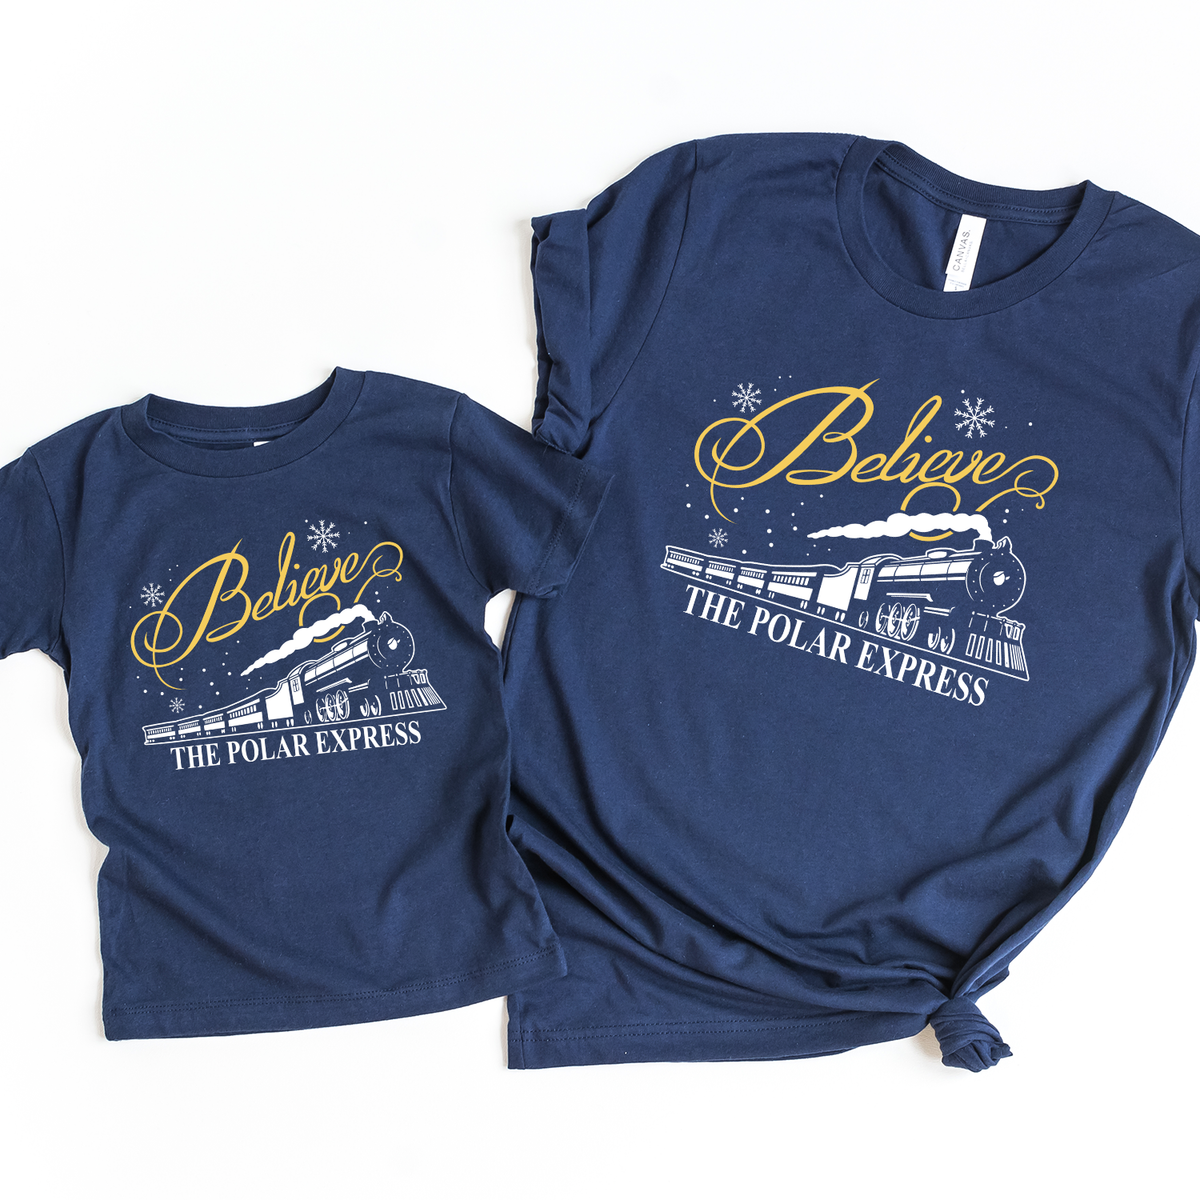 Polar Express Believe Navy T-Shirt - family twinning